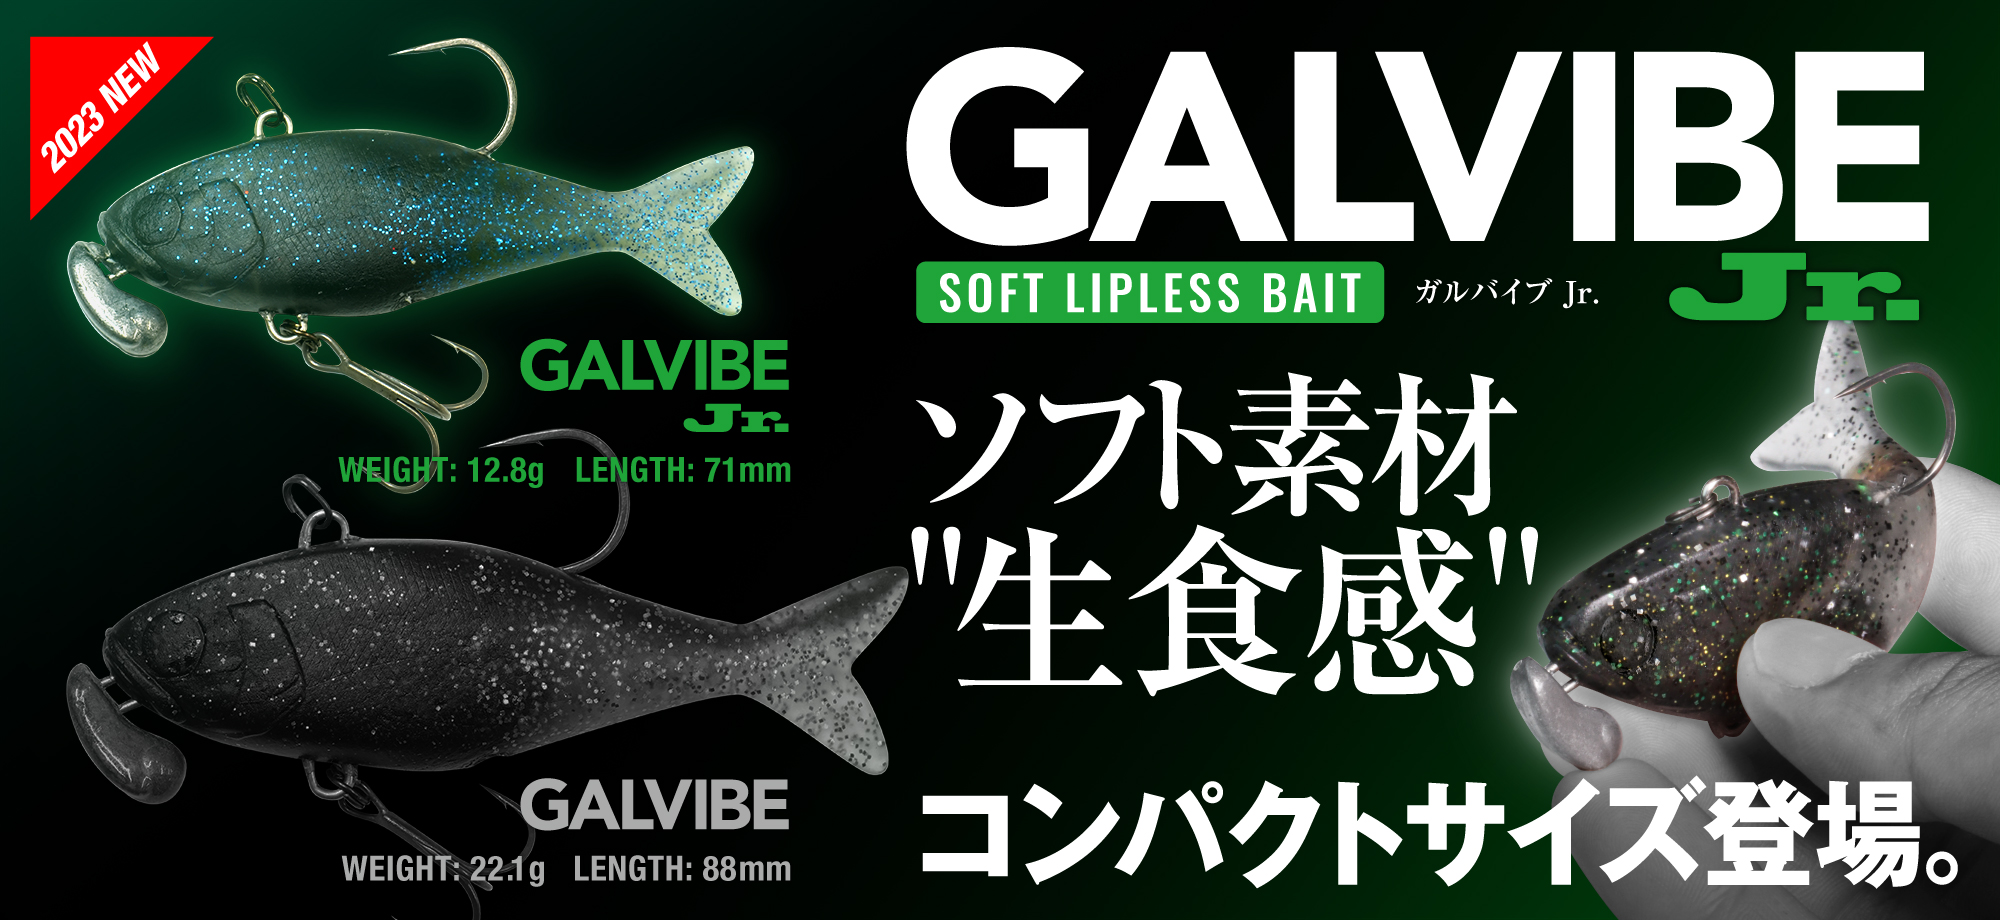 GALVIBE / ガルバイブ